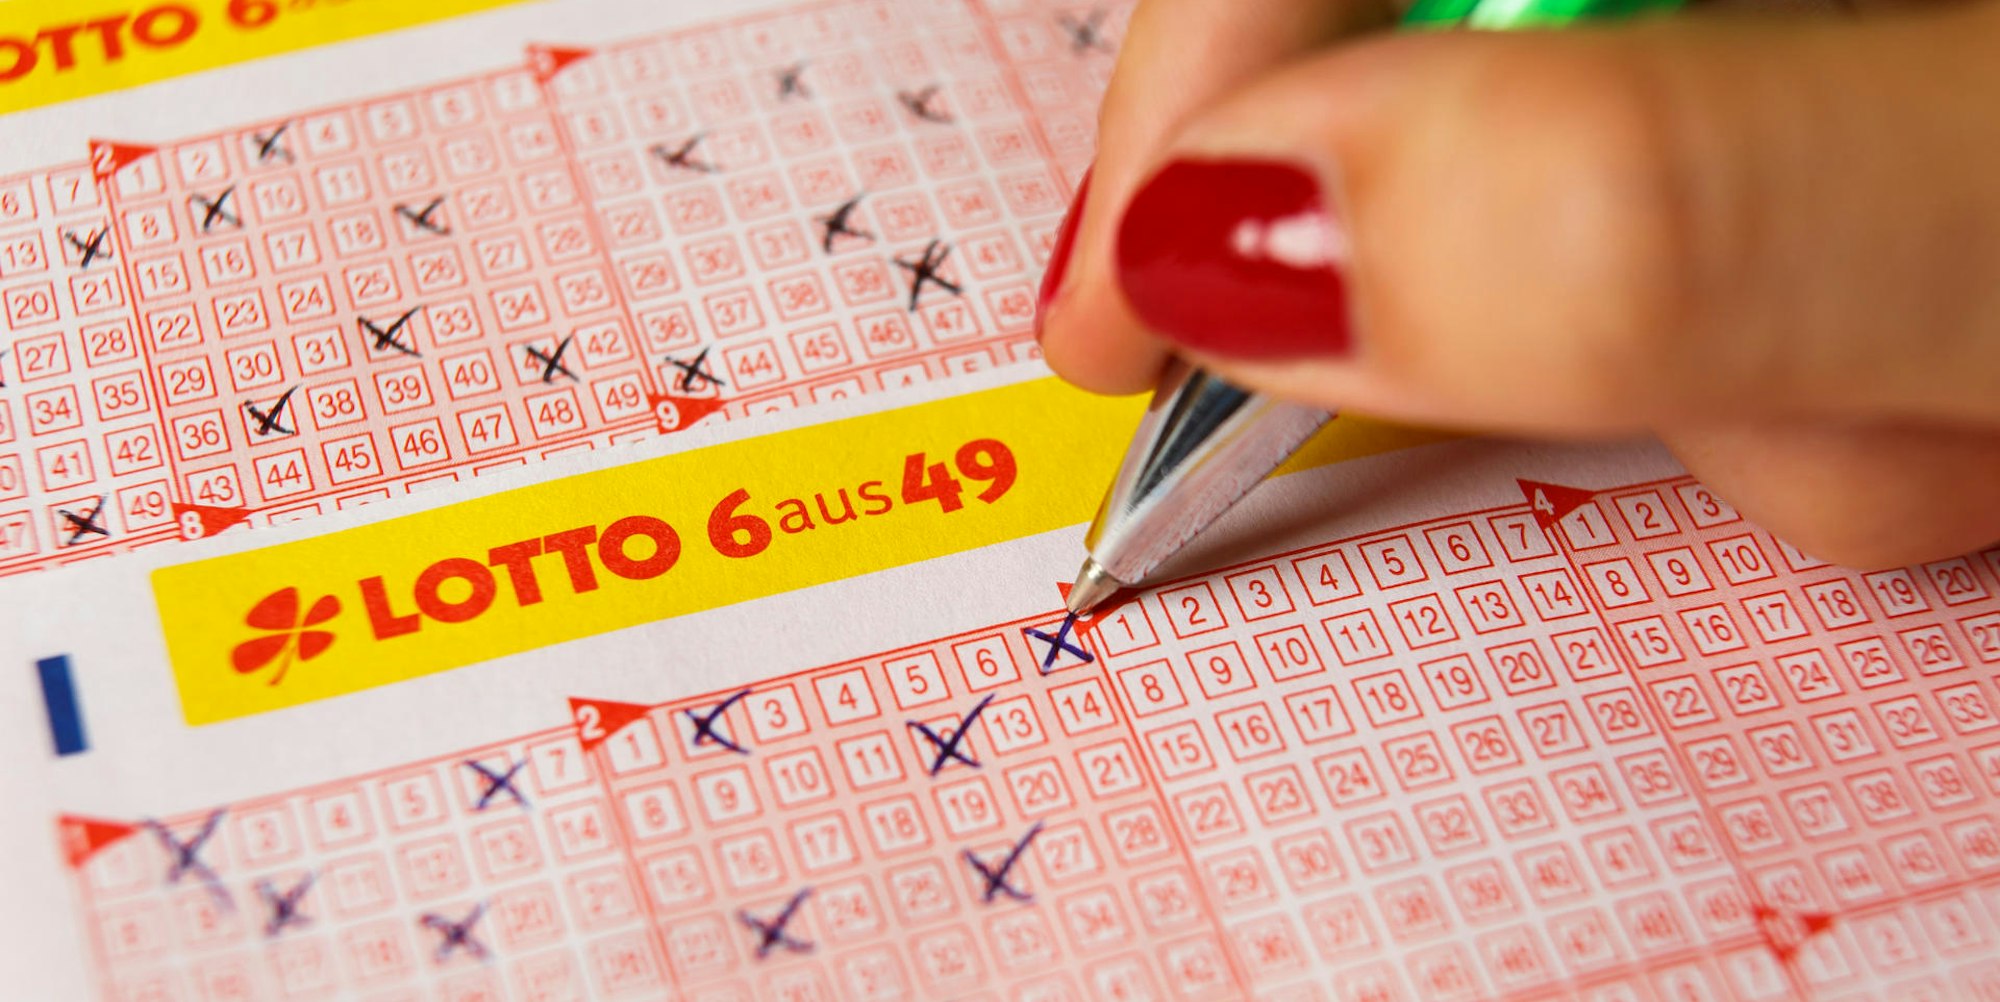 Sonnige Aussichten: Im Lotto-Jackpot warten 17 Millionen Euro bei der Ziehung am kommenden Samstag, 16. Mai.